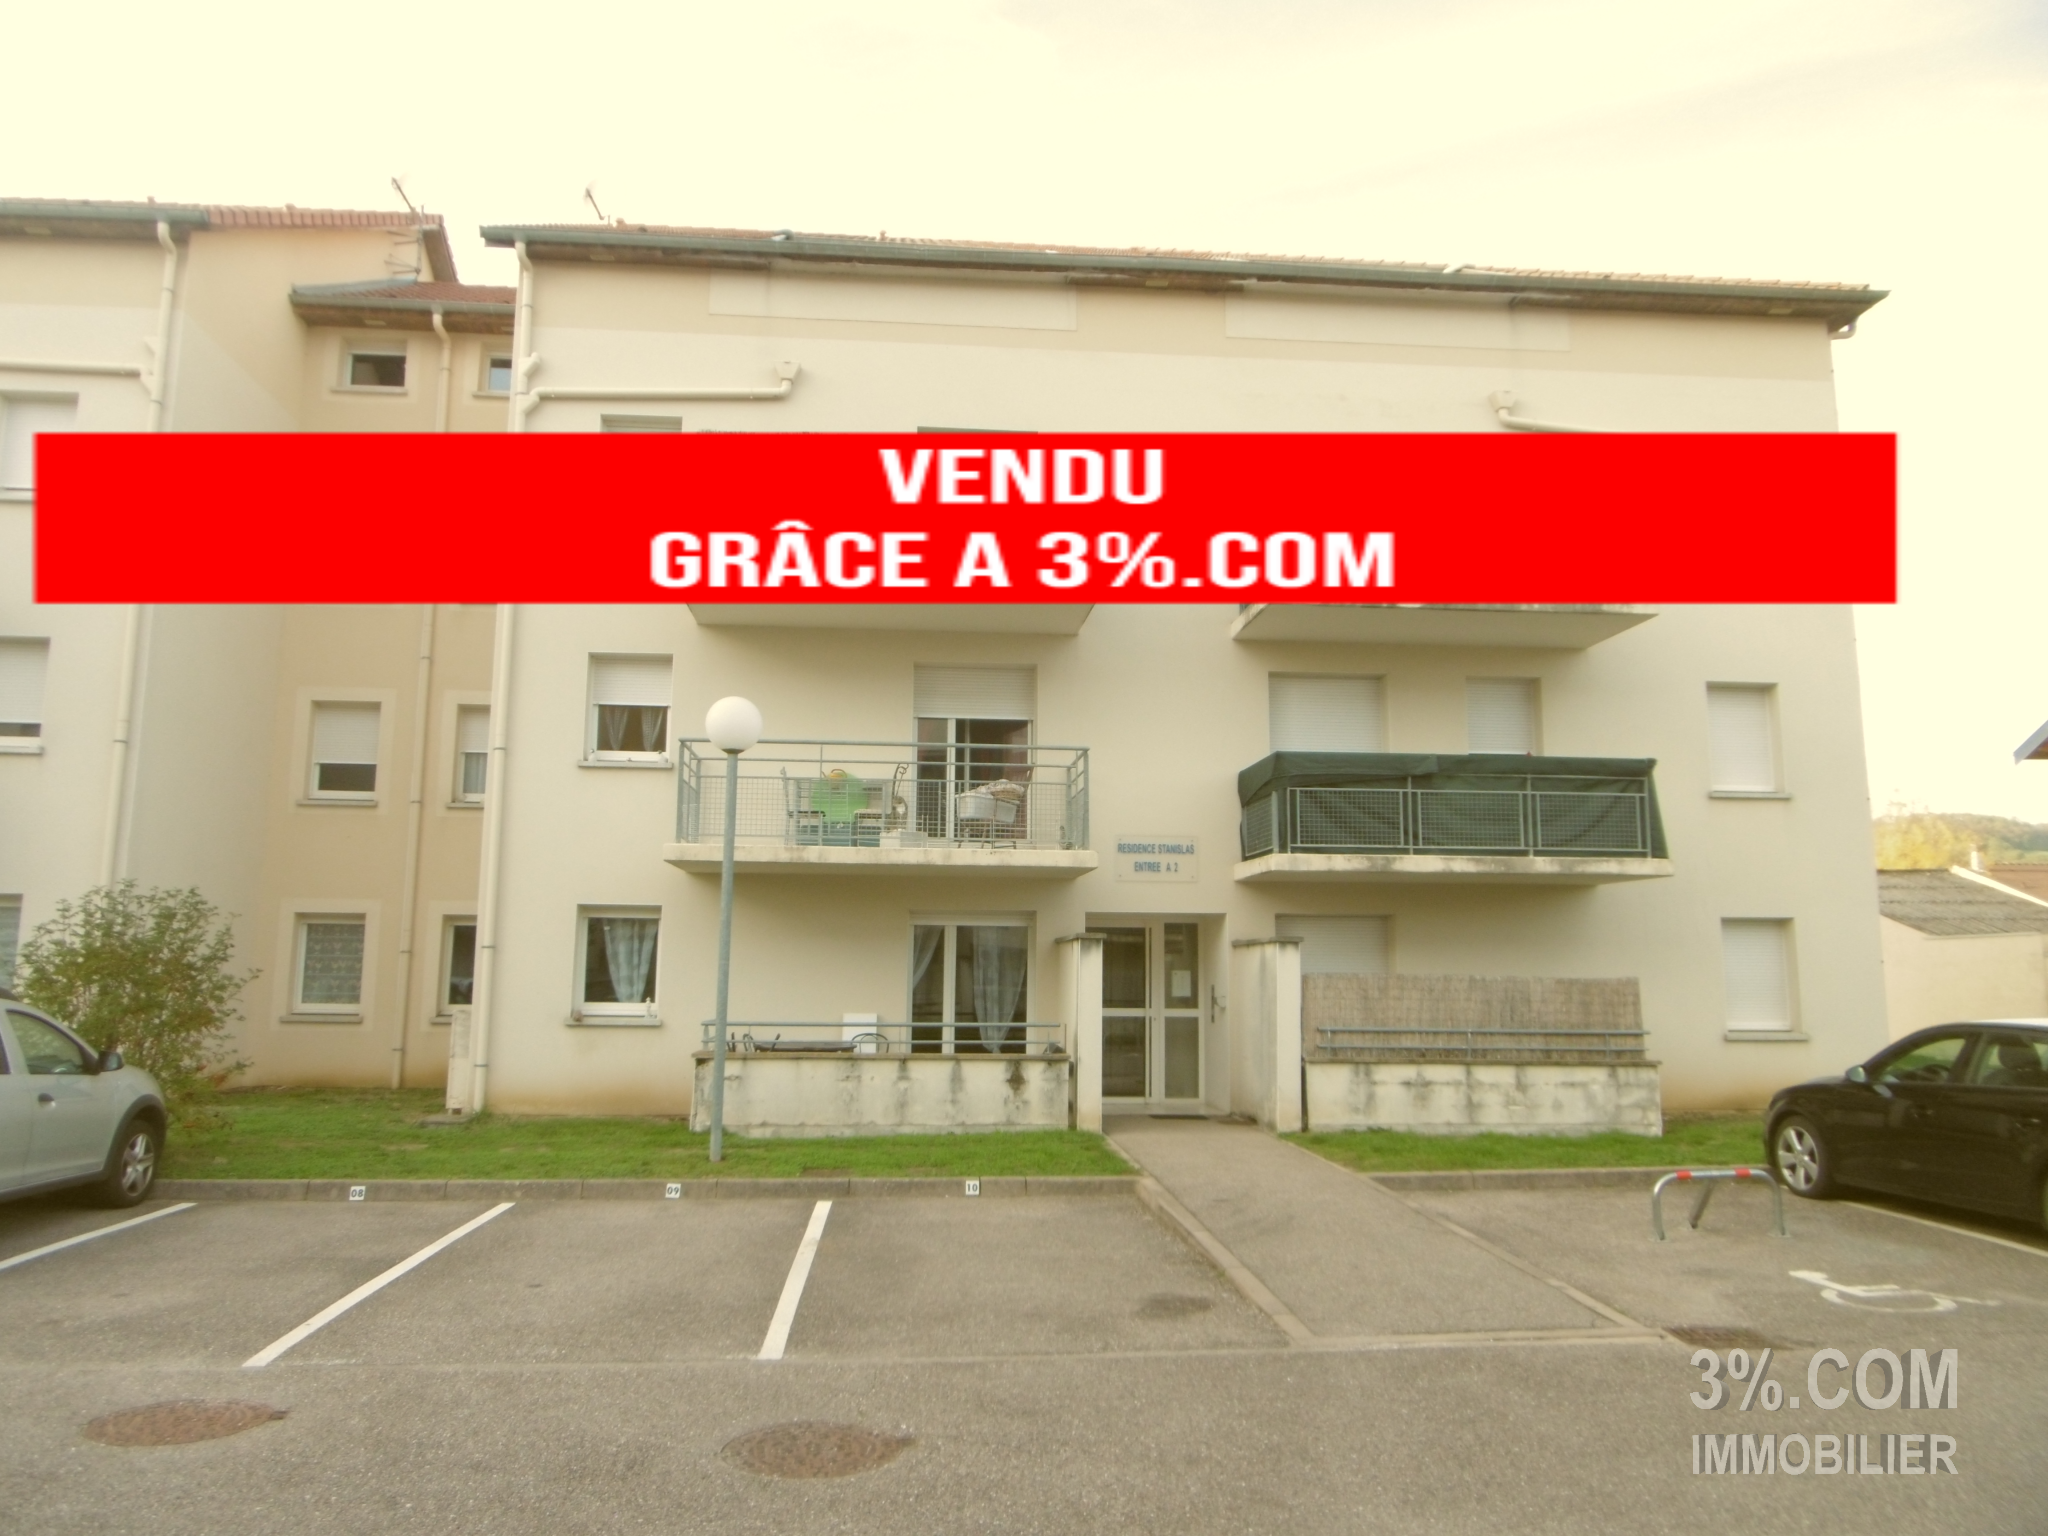 Vente Appartement 45m² 3 Pièces à Essey-lès-Nancy (54270) - 3%.Com